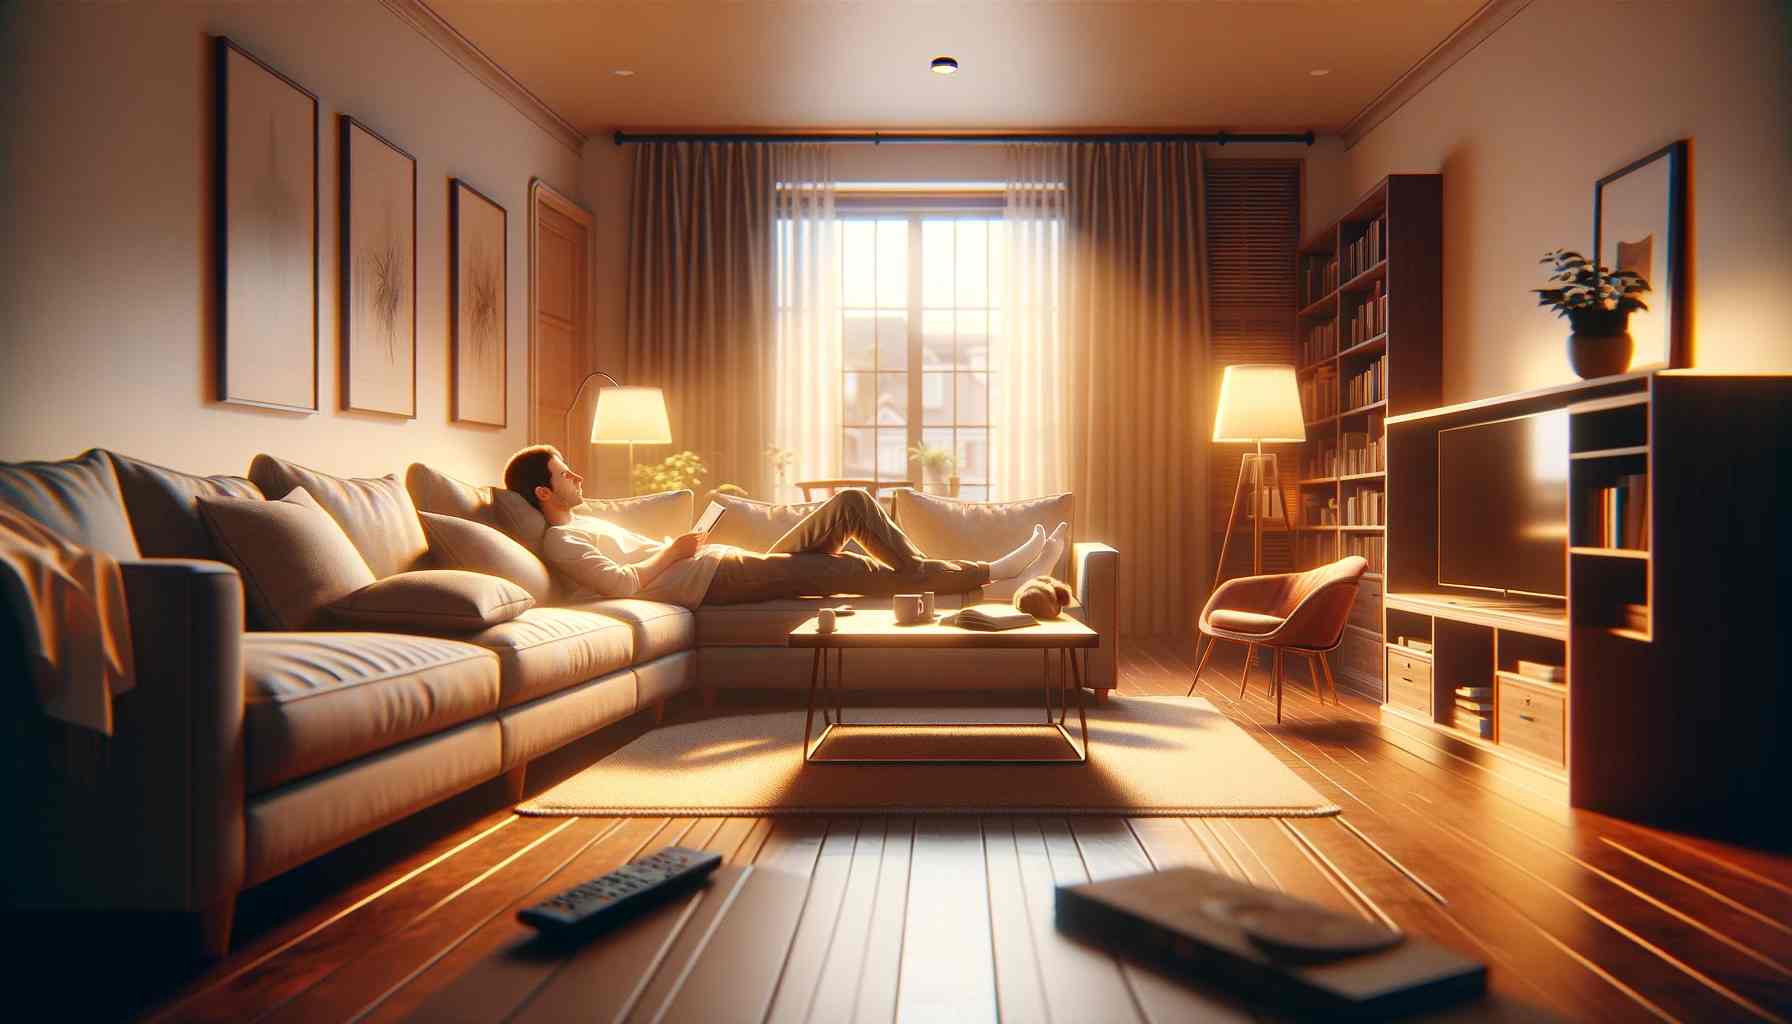 Egy szobai kanapén pihenő személy valósághű képe, szélesvásznú képarányban. A képnek egy nyugodt és kényelmes